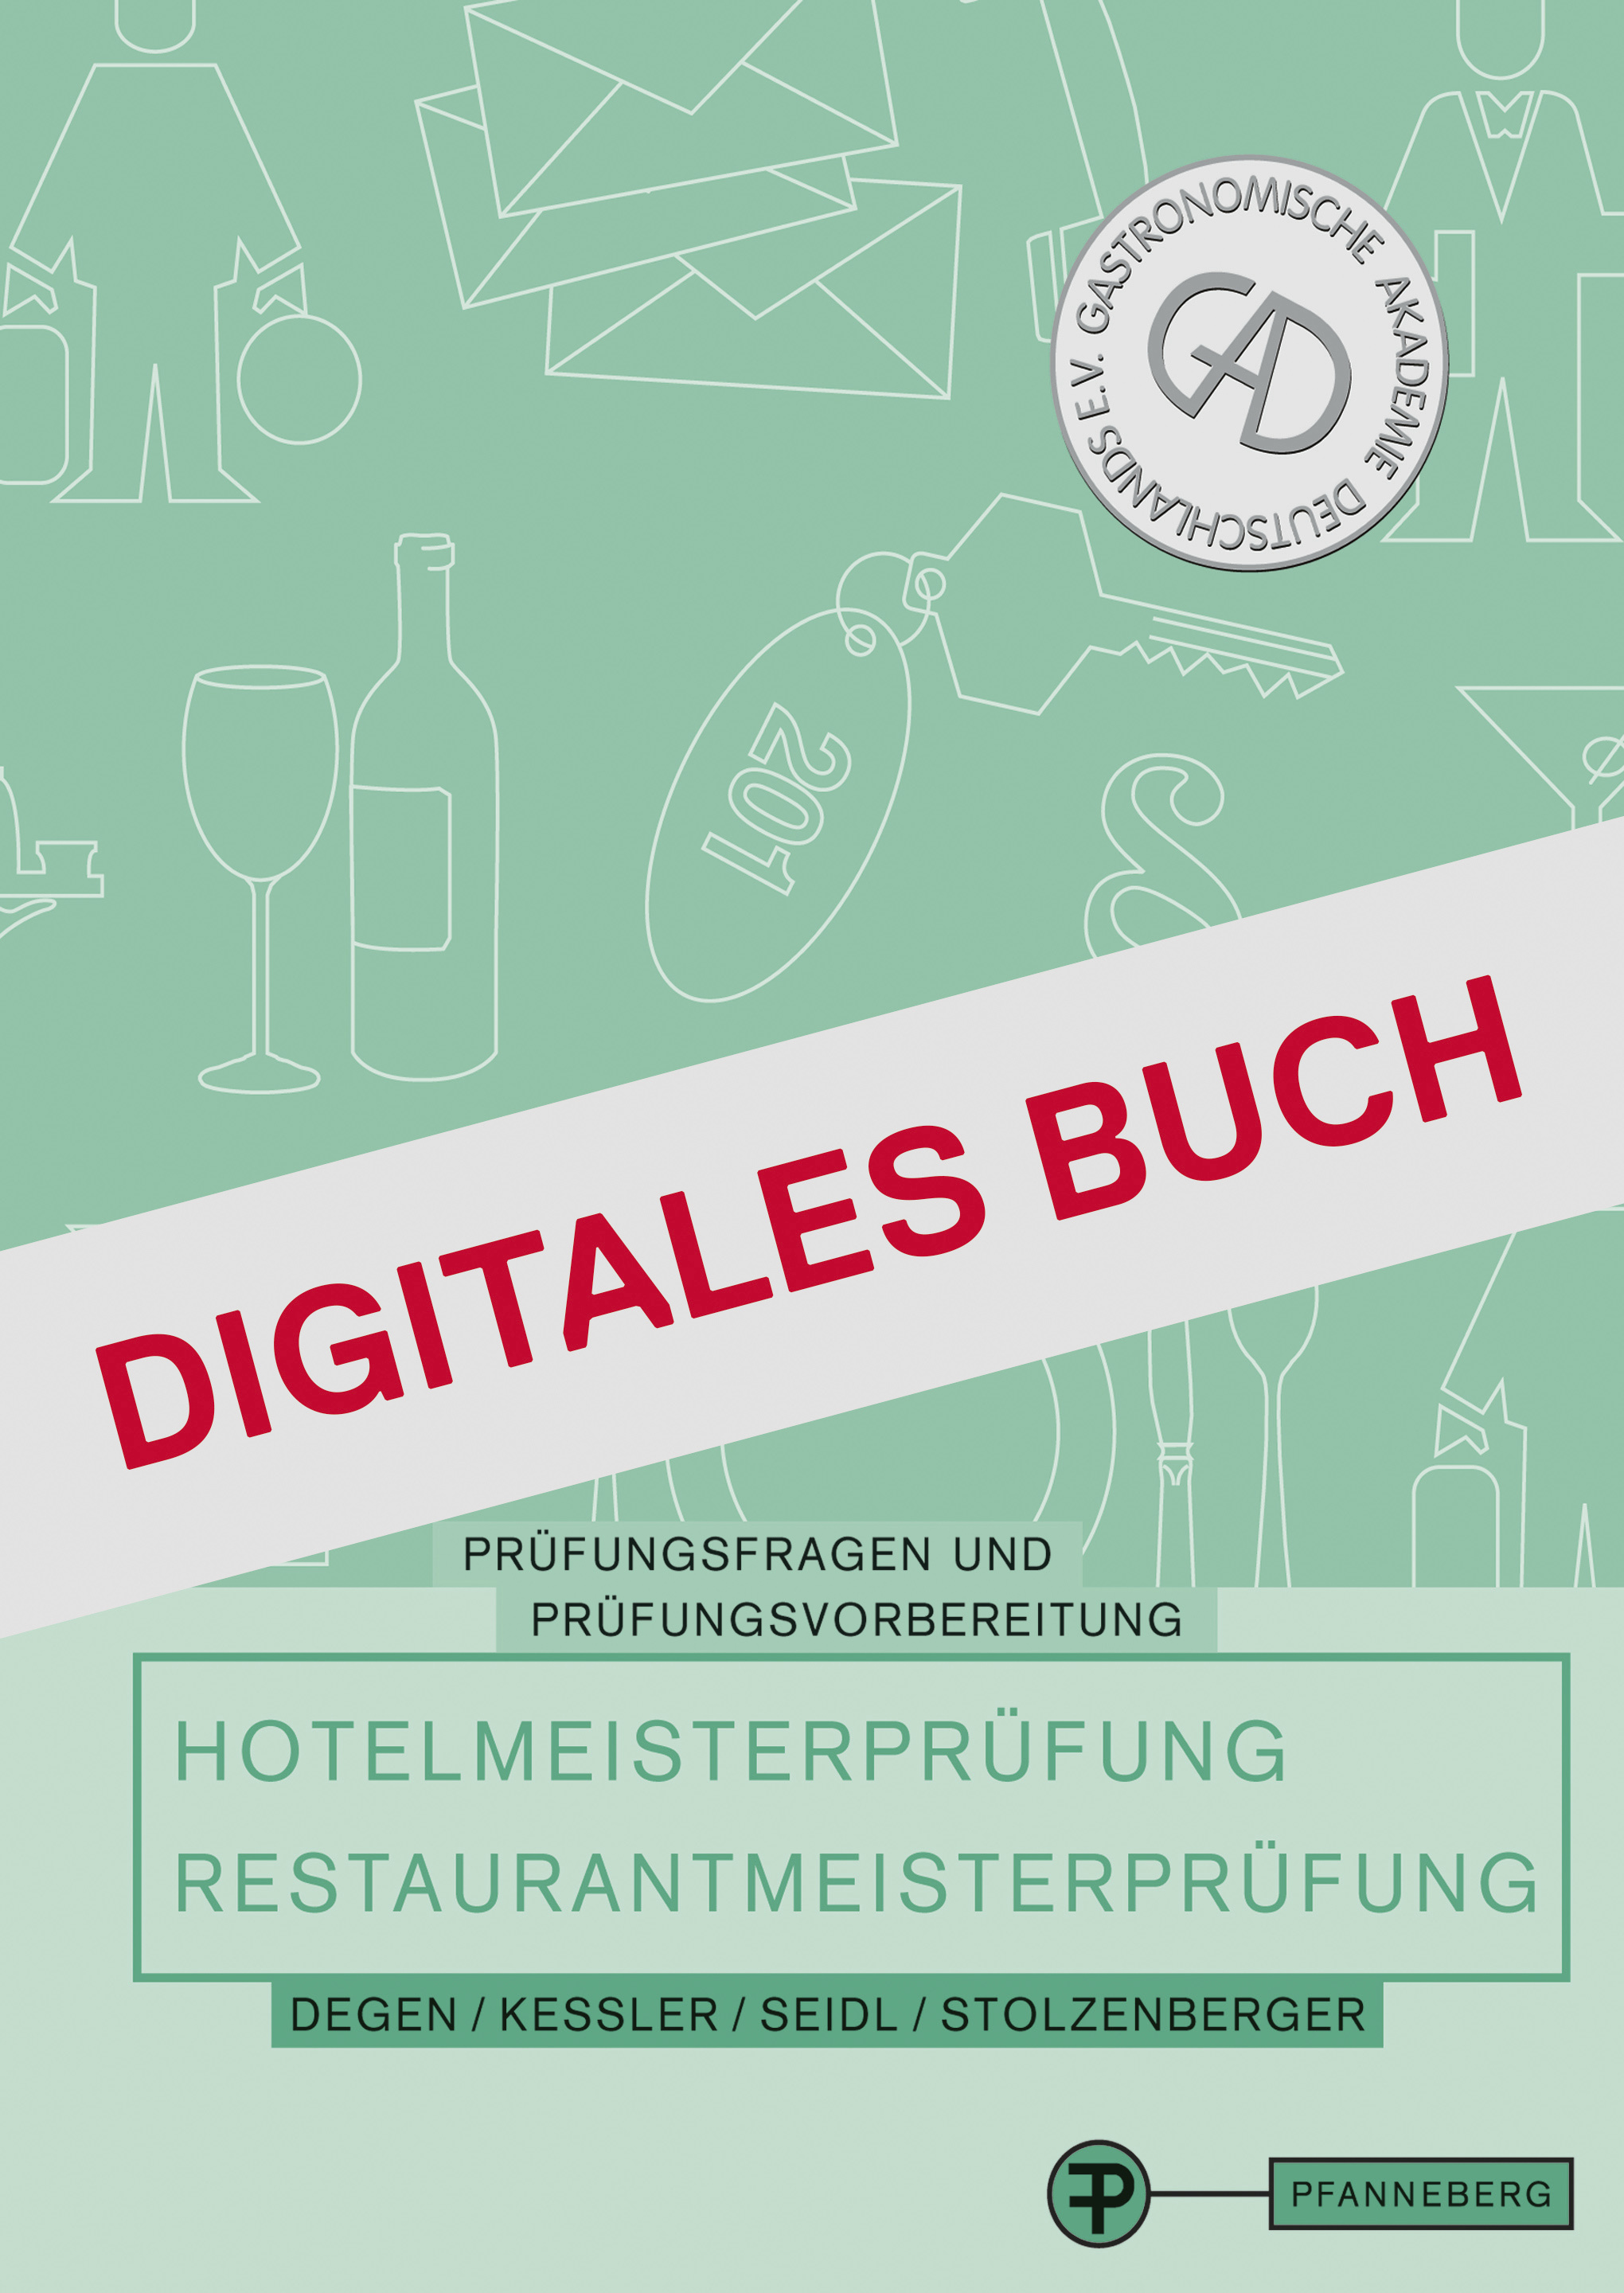 Prüfungsfragen für die Hotel- Restaurantmeisterprüfung - Digitales Buch